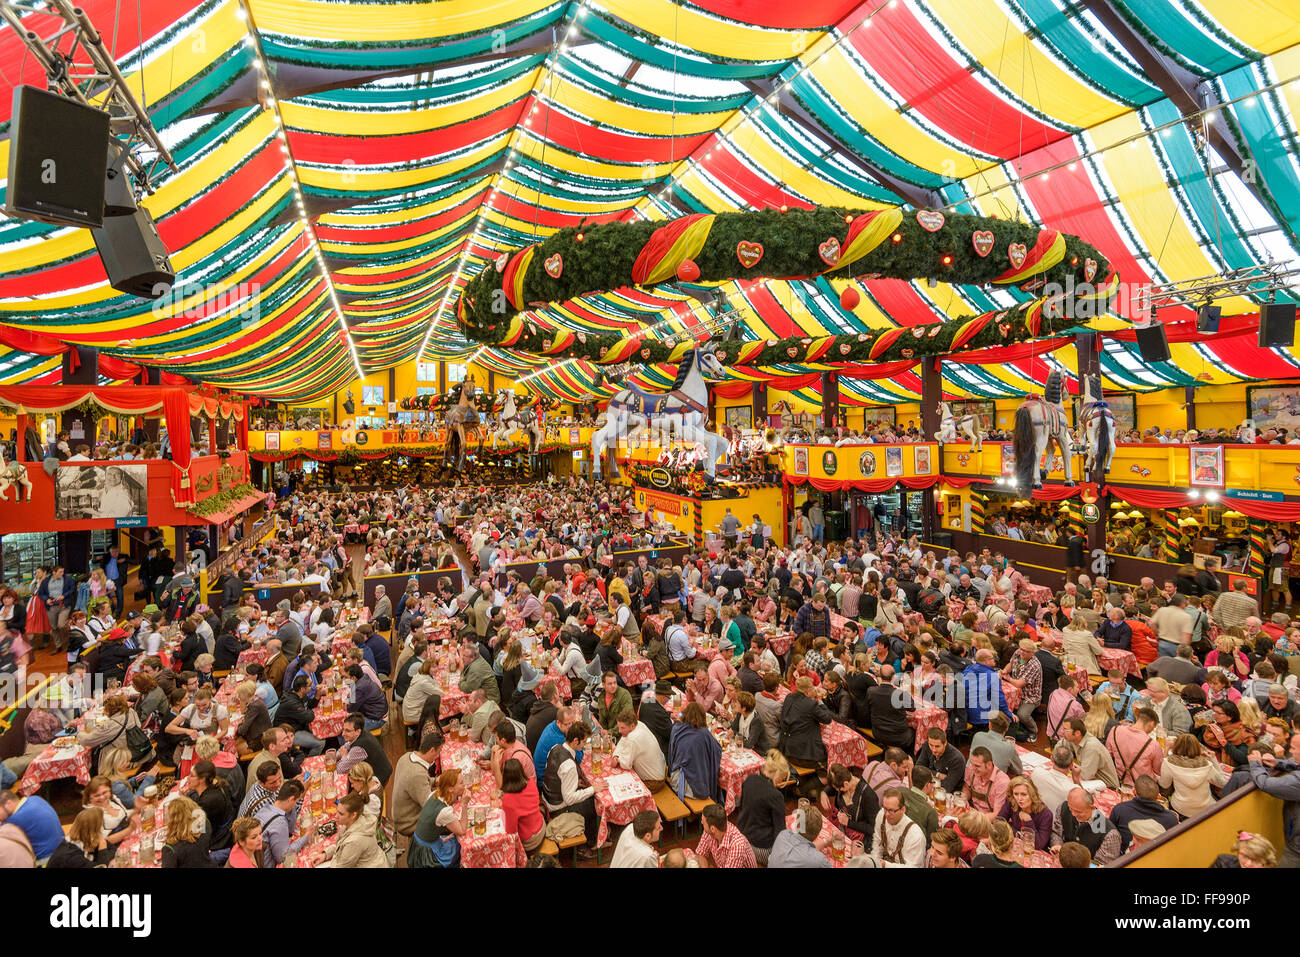 Les foules à l'Hippodrom tente à bière sur la Theresienwiese Oktoberfest parc des expositions de Munich, Allemagne. Banque D'Images